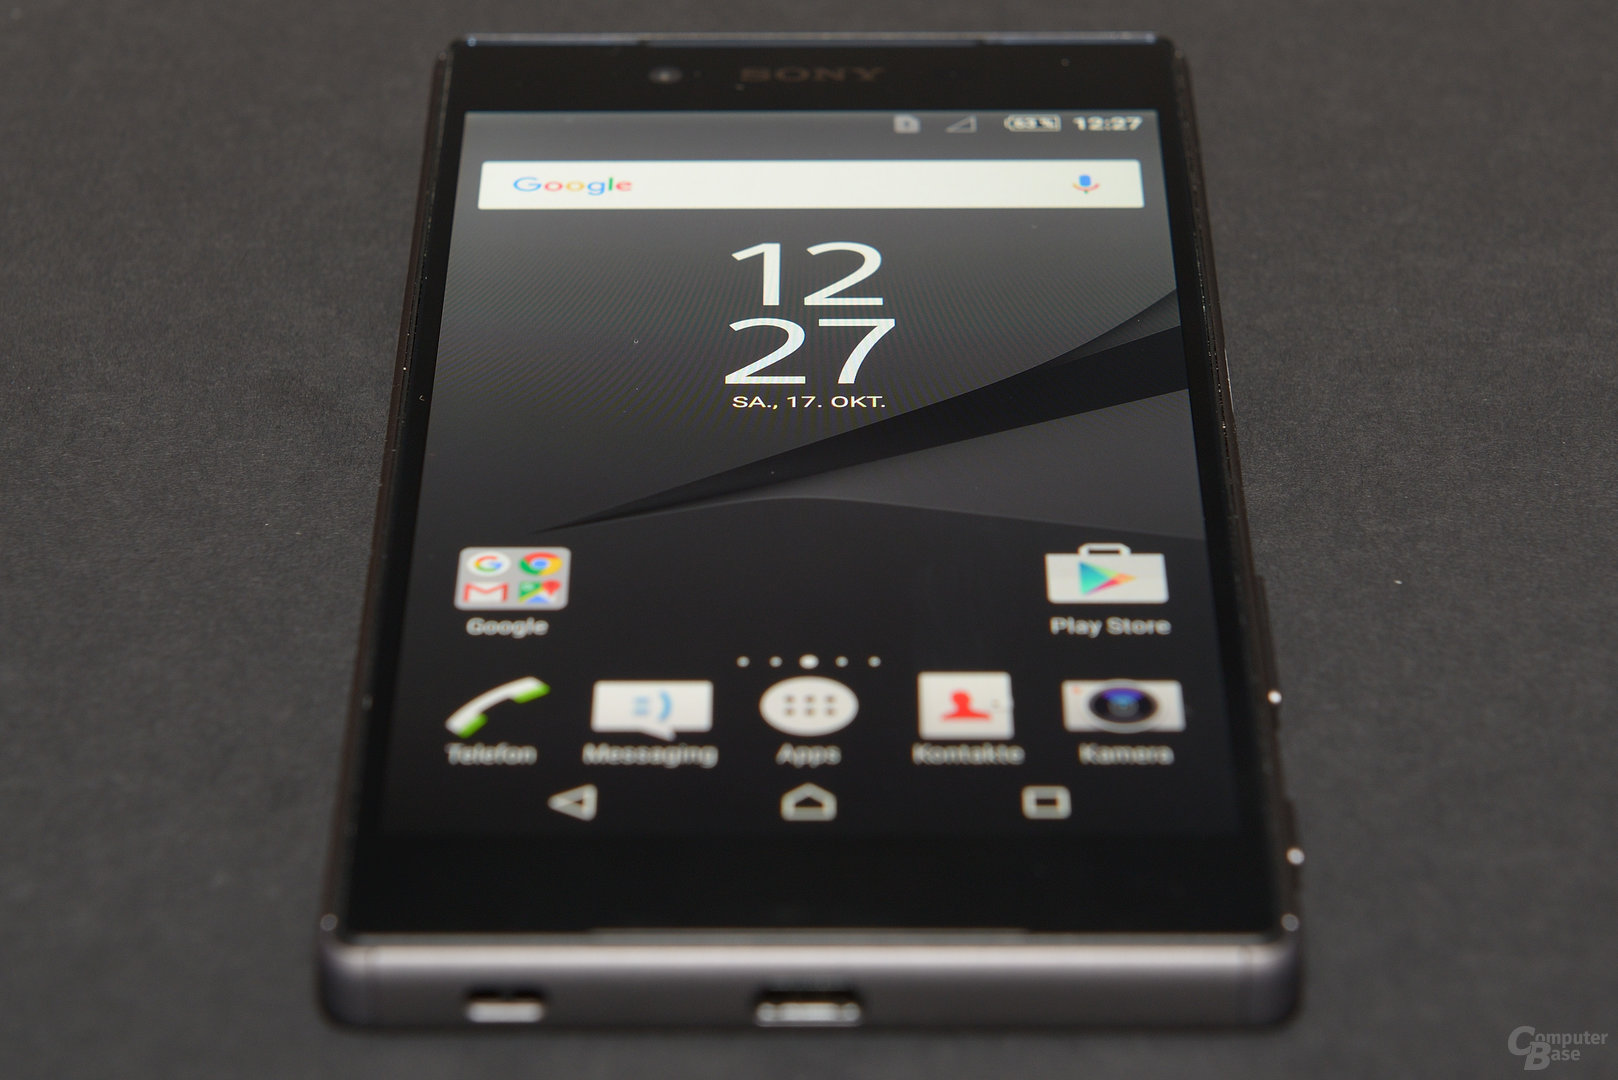 Sony Xperia Z5 (Compact) im Test